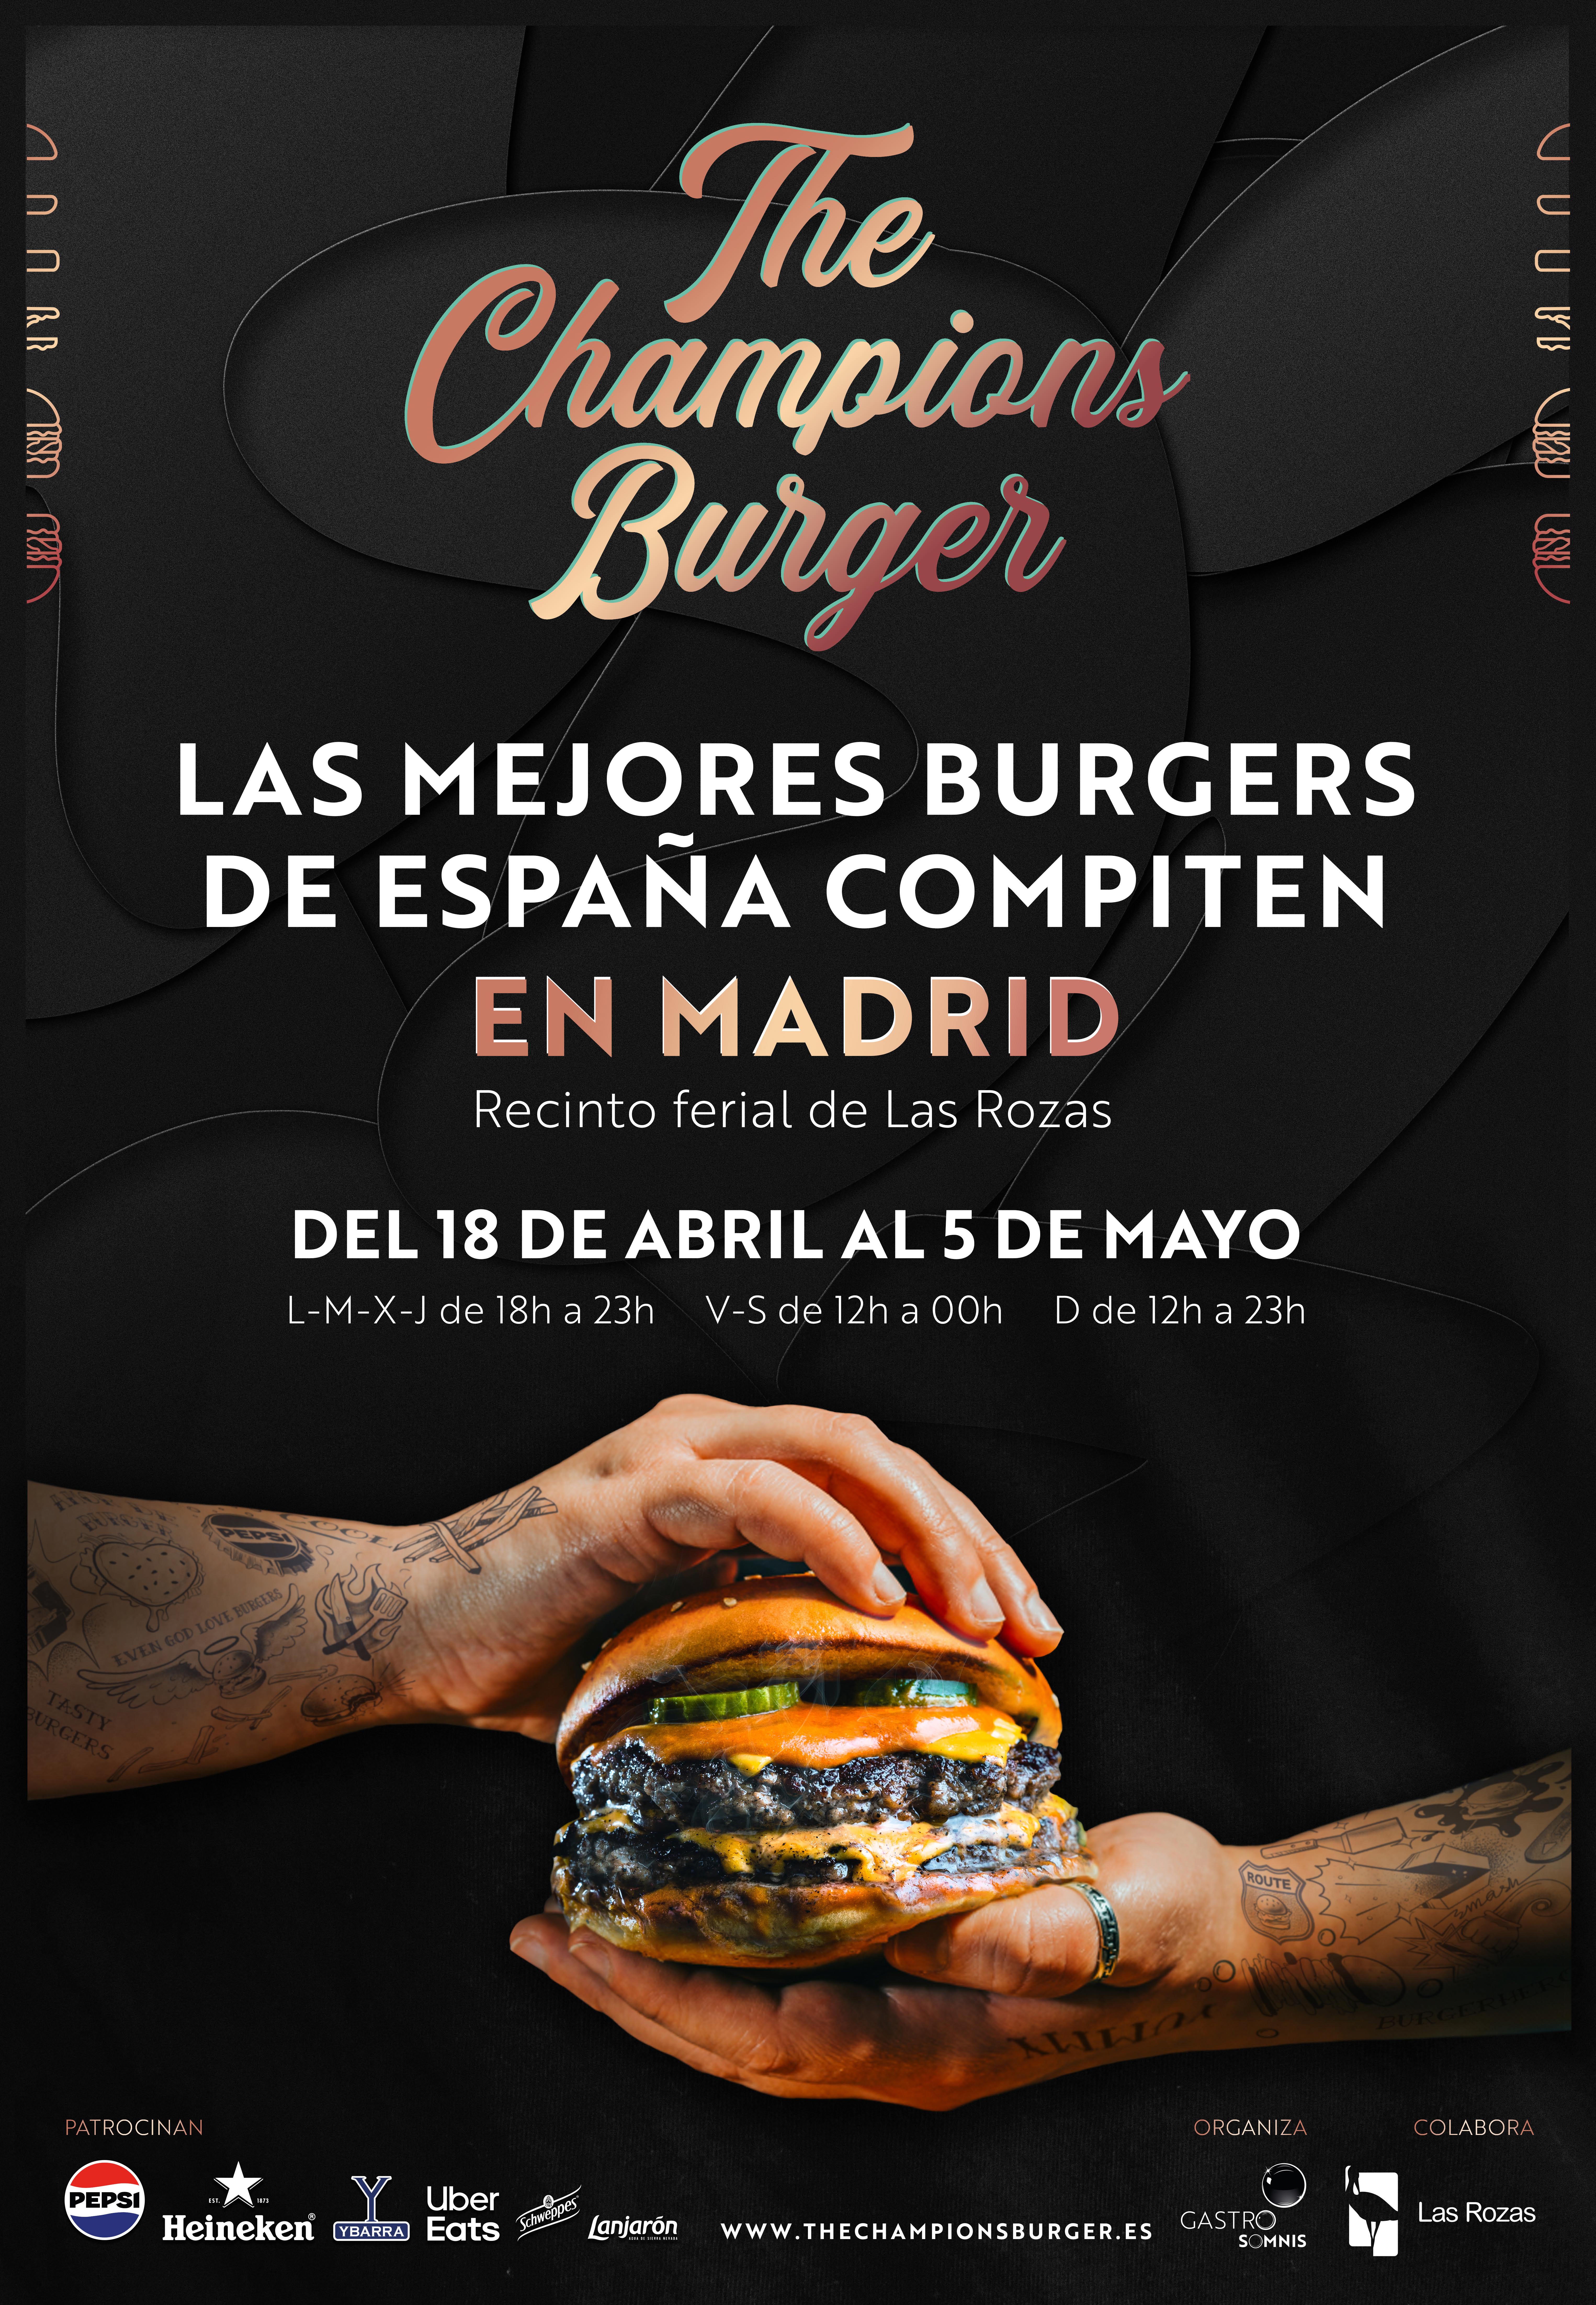 The champion burger